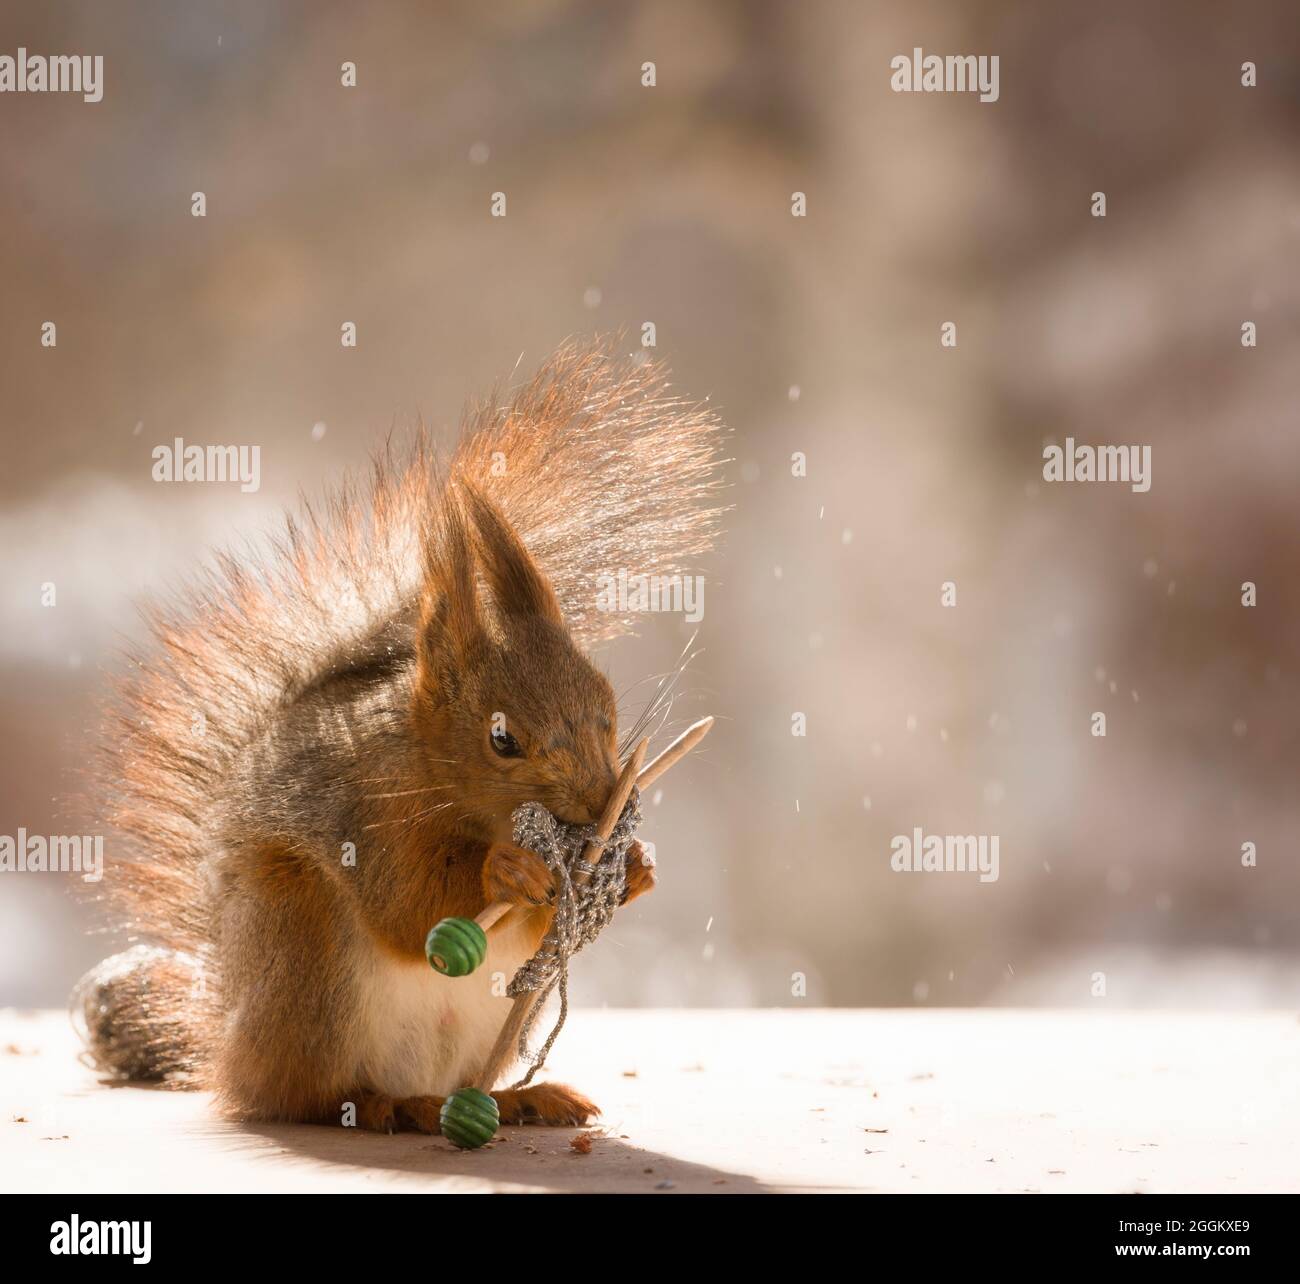 L'écureuil roux est la tenue des aiguilles à tricoter Banque D'Images